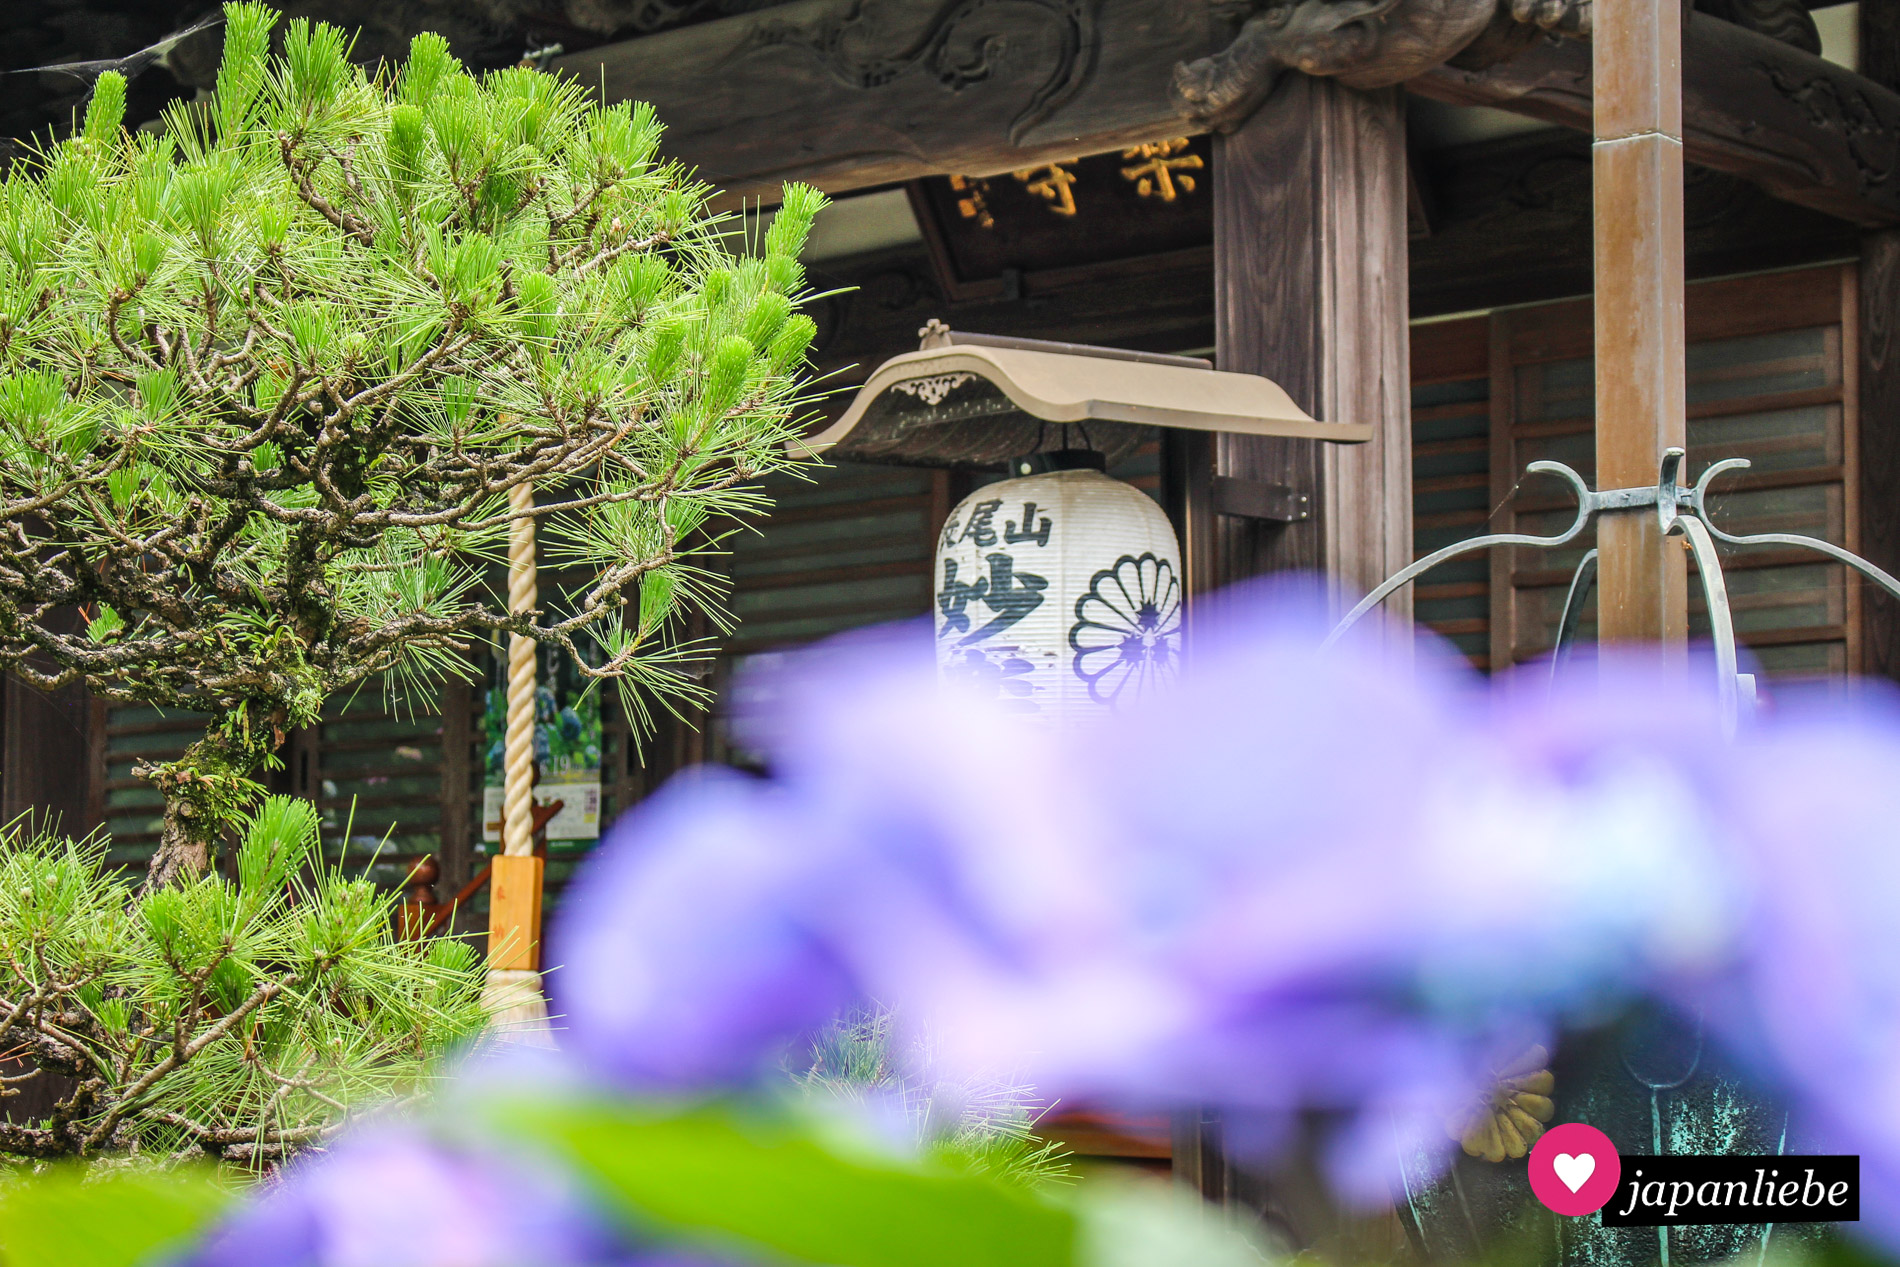 Die Hortensien, die zur Regenzeit am Ajisai-dera blühen, bilden farblich einen wunderbaren Kontrast zum Holz der Tempelgebäude.